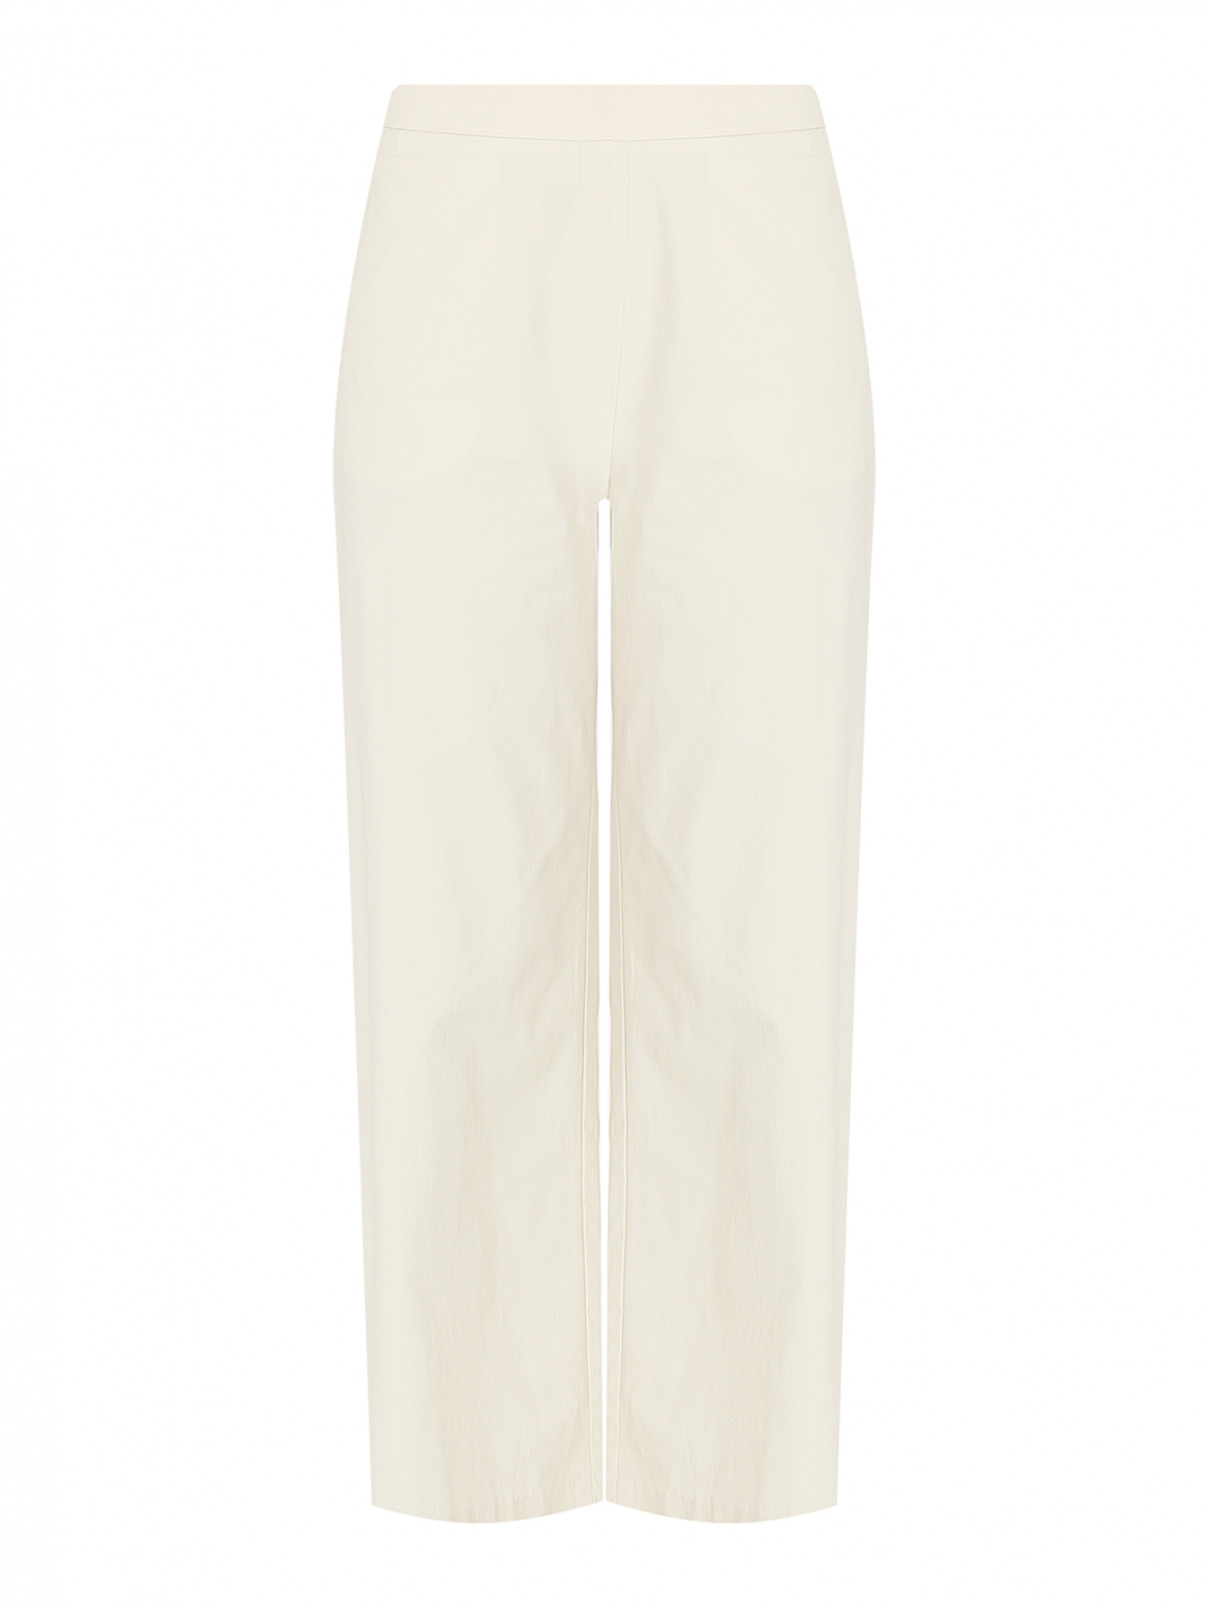 Однотонные брюки из хлопка на резинке Fabiana Filippi  –  Общий вид